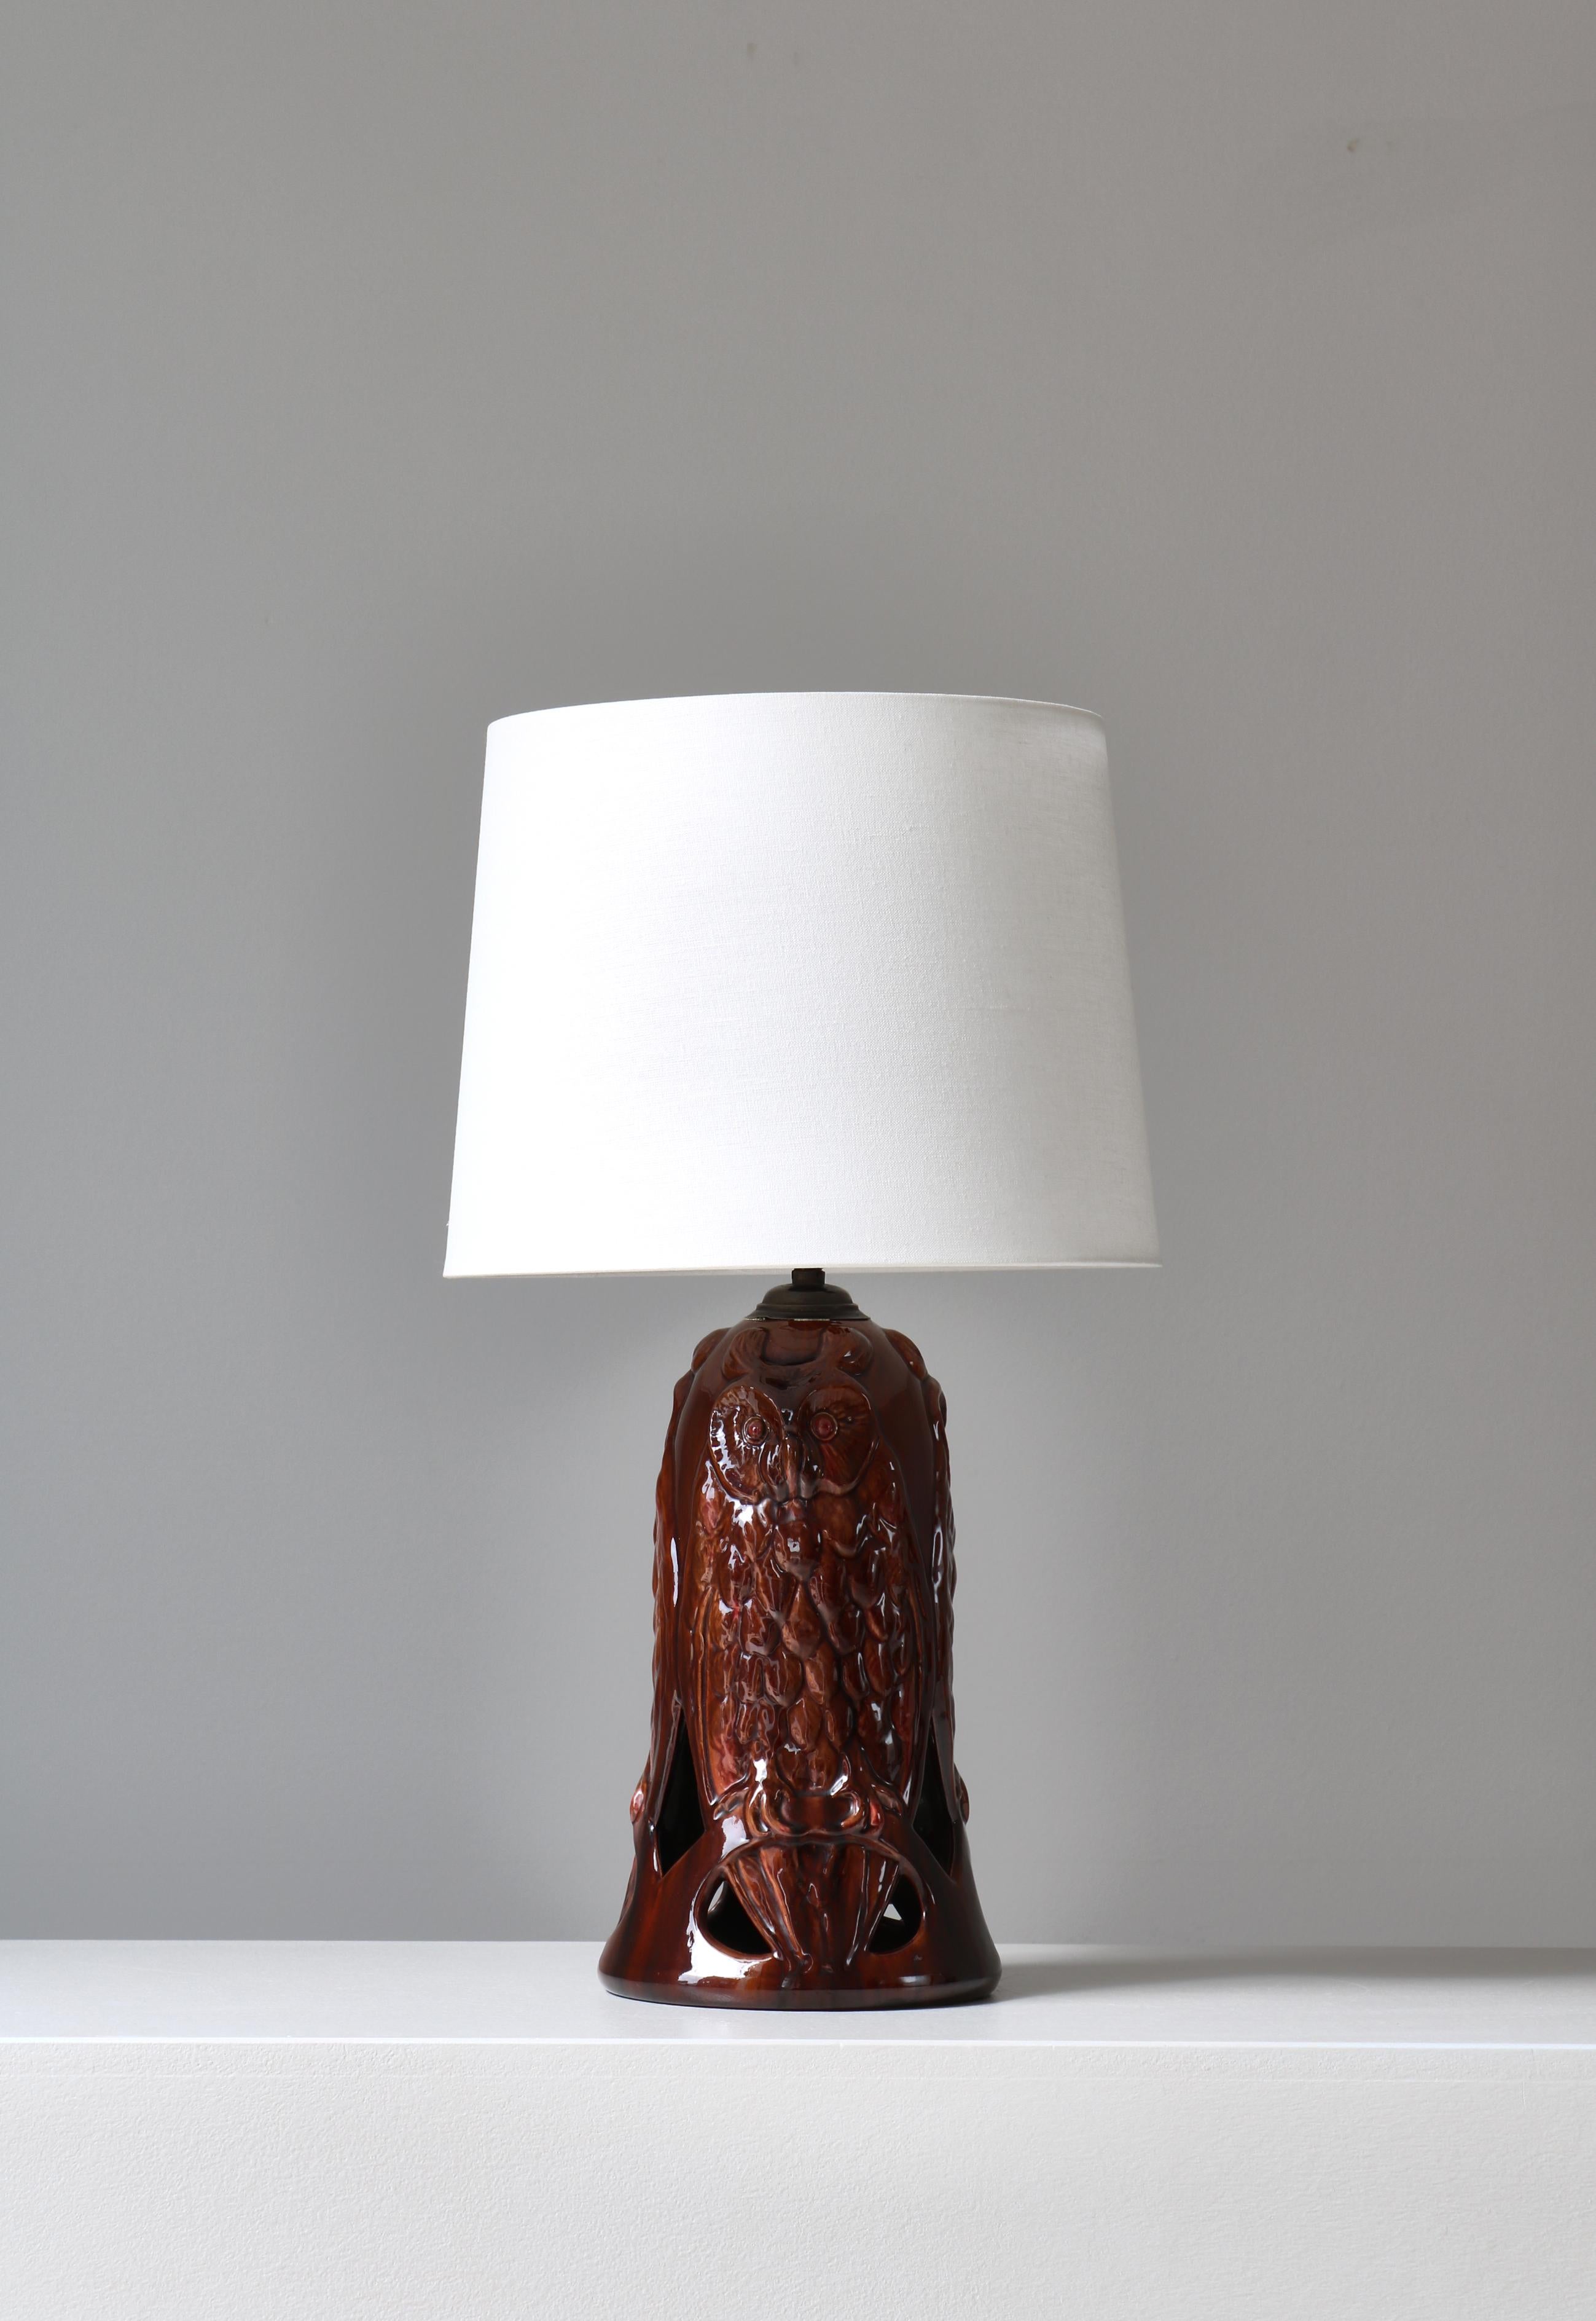 Merveilleuse lampe de table en céramique fabriquée par Michael Andersen & Sons, Danemark, dans les années 1920. Pied de lampe en faïence fait à la main avec un décor de hibou et une glaçure rouge expressive. Estampillé en dessous 